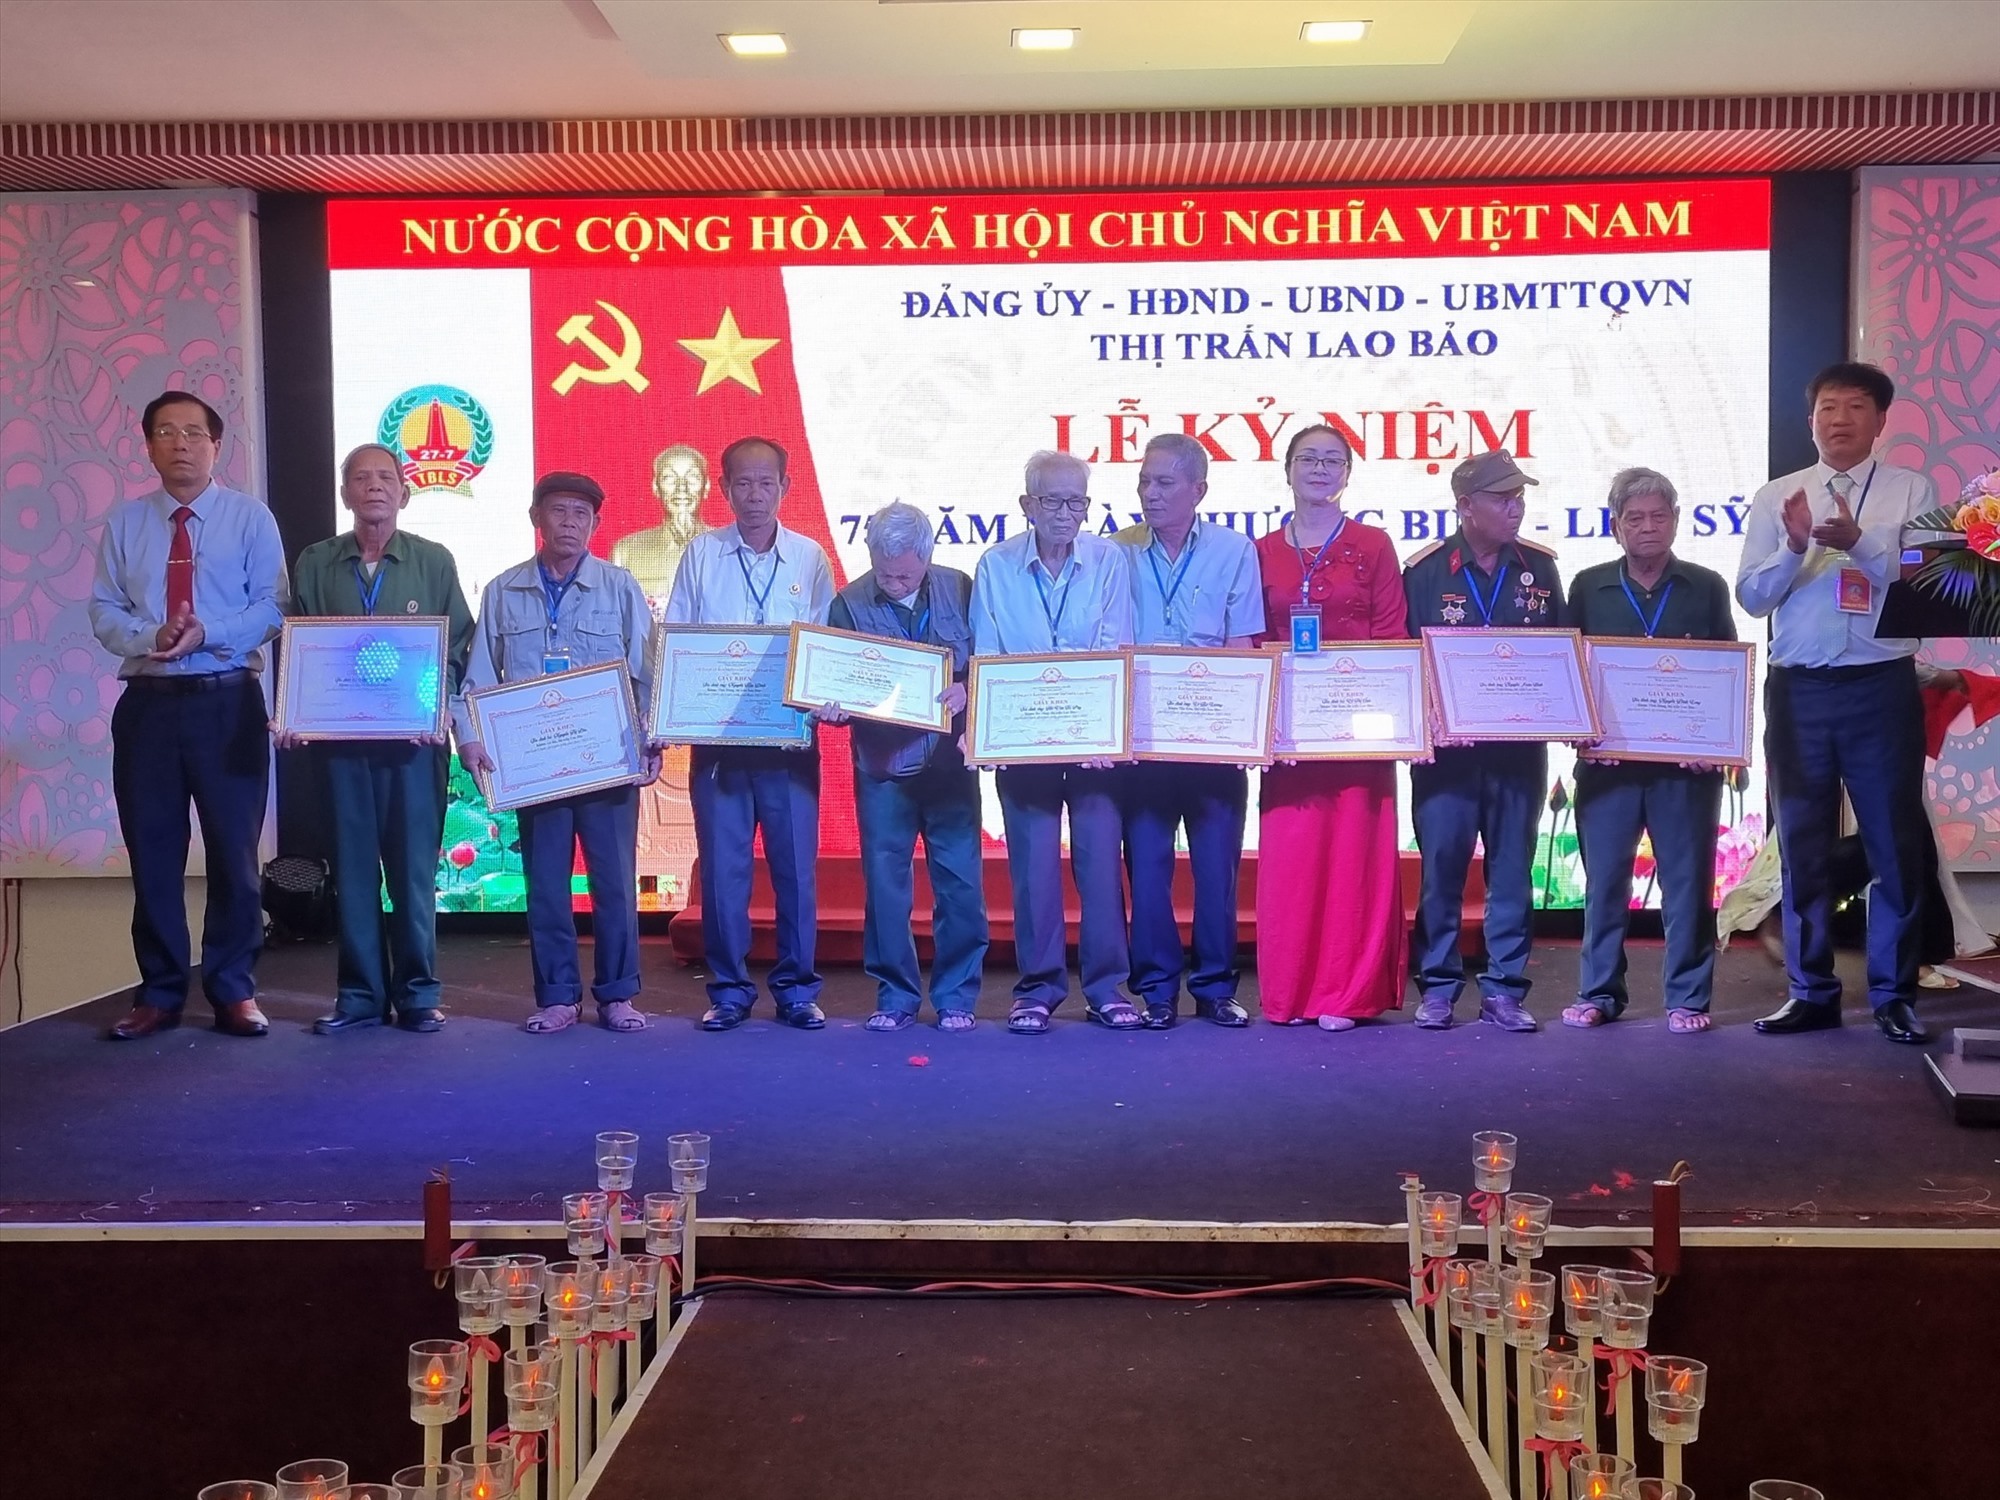 Tặng giấy khen của UBND thị trấn Lao Bảo cho người có công tiêu biểu